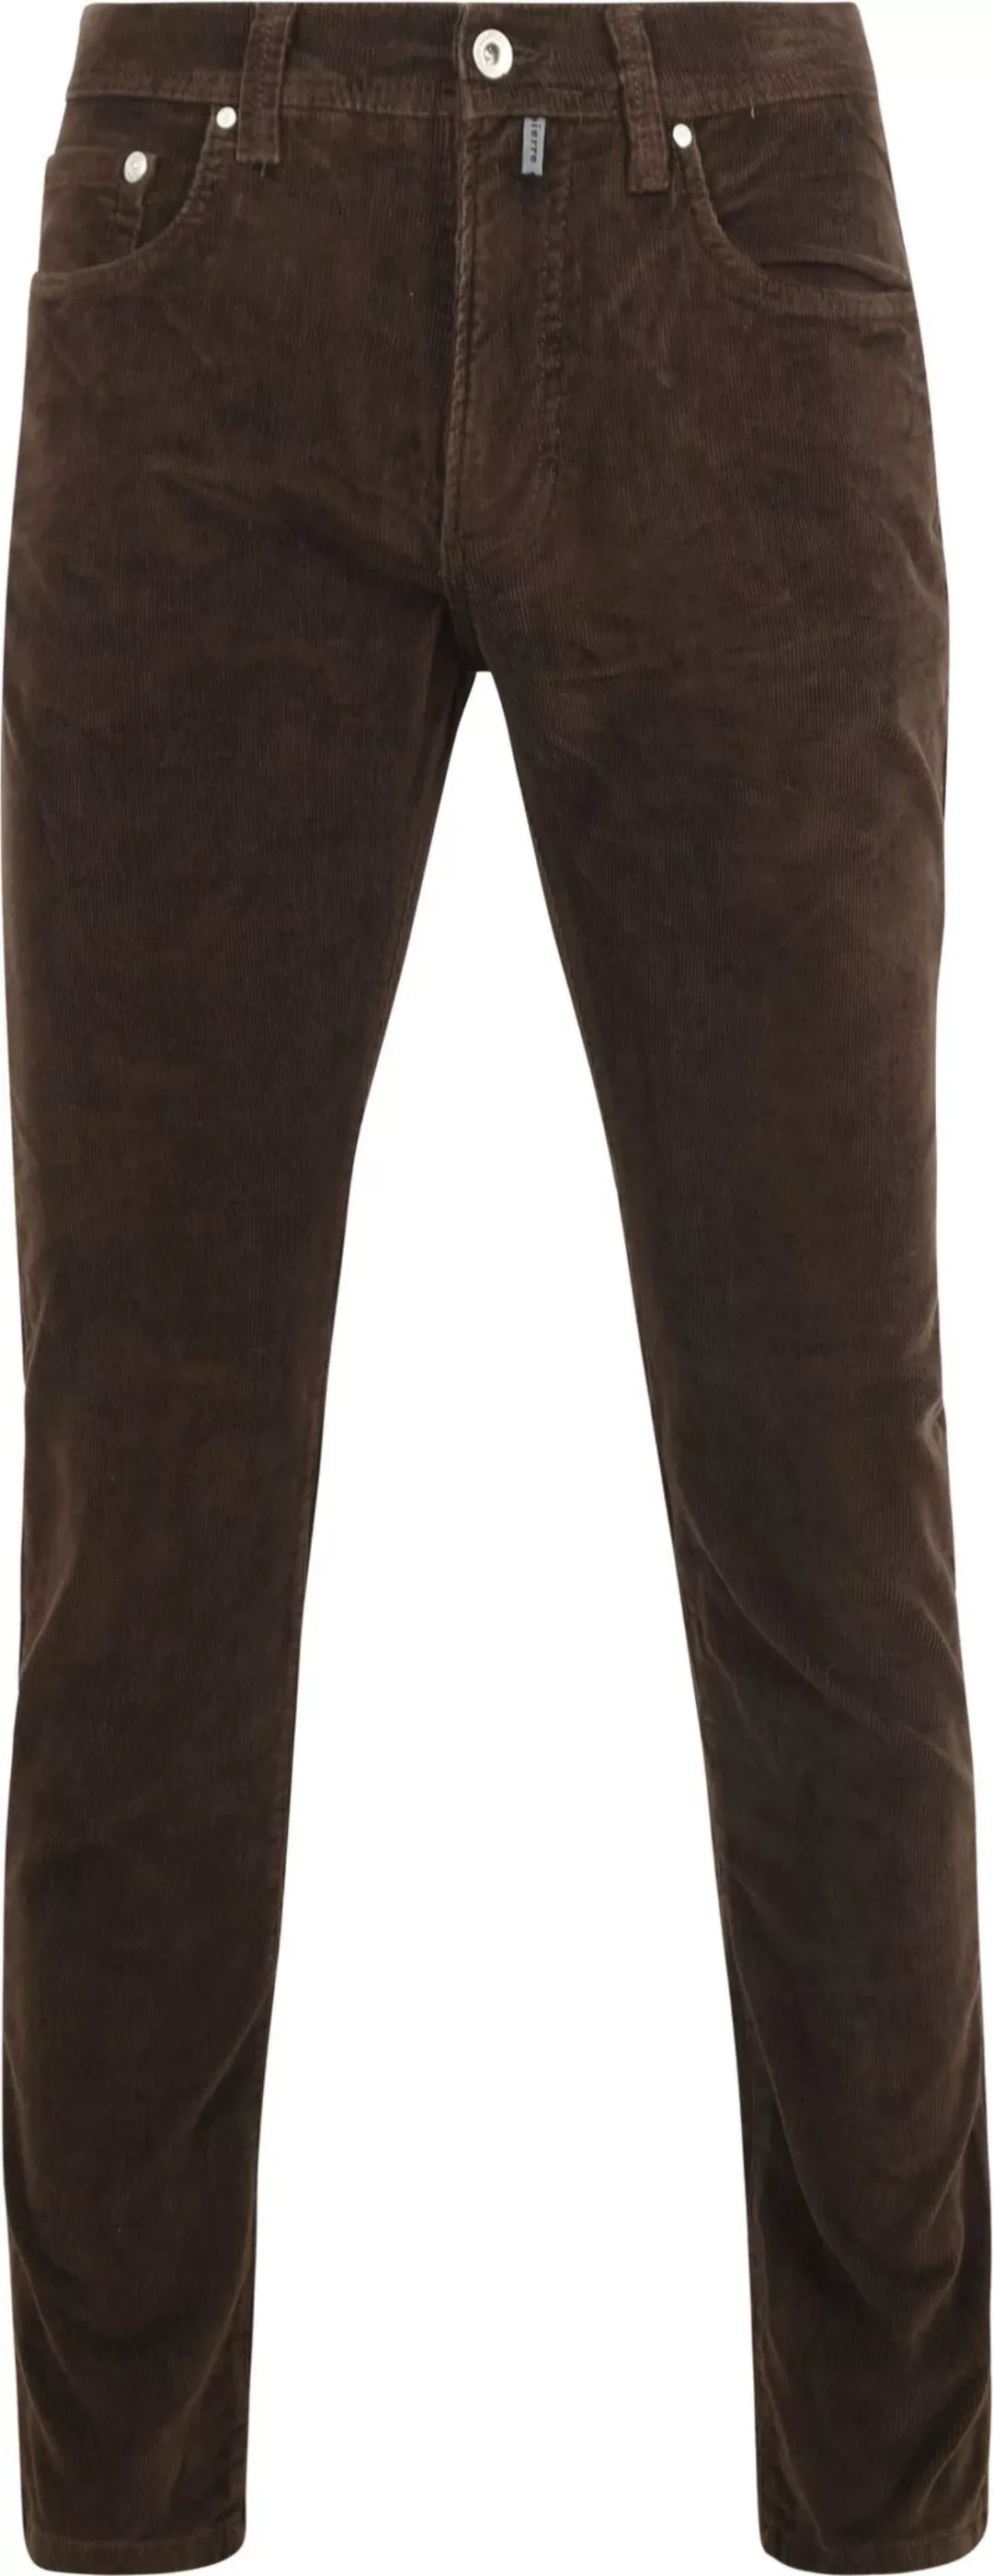 Pierre Cardin Trousers Lyon Future Flex Corduroy Braun - Größe W 36 - L 32 günstig online kaufen